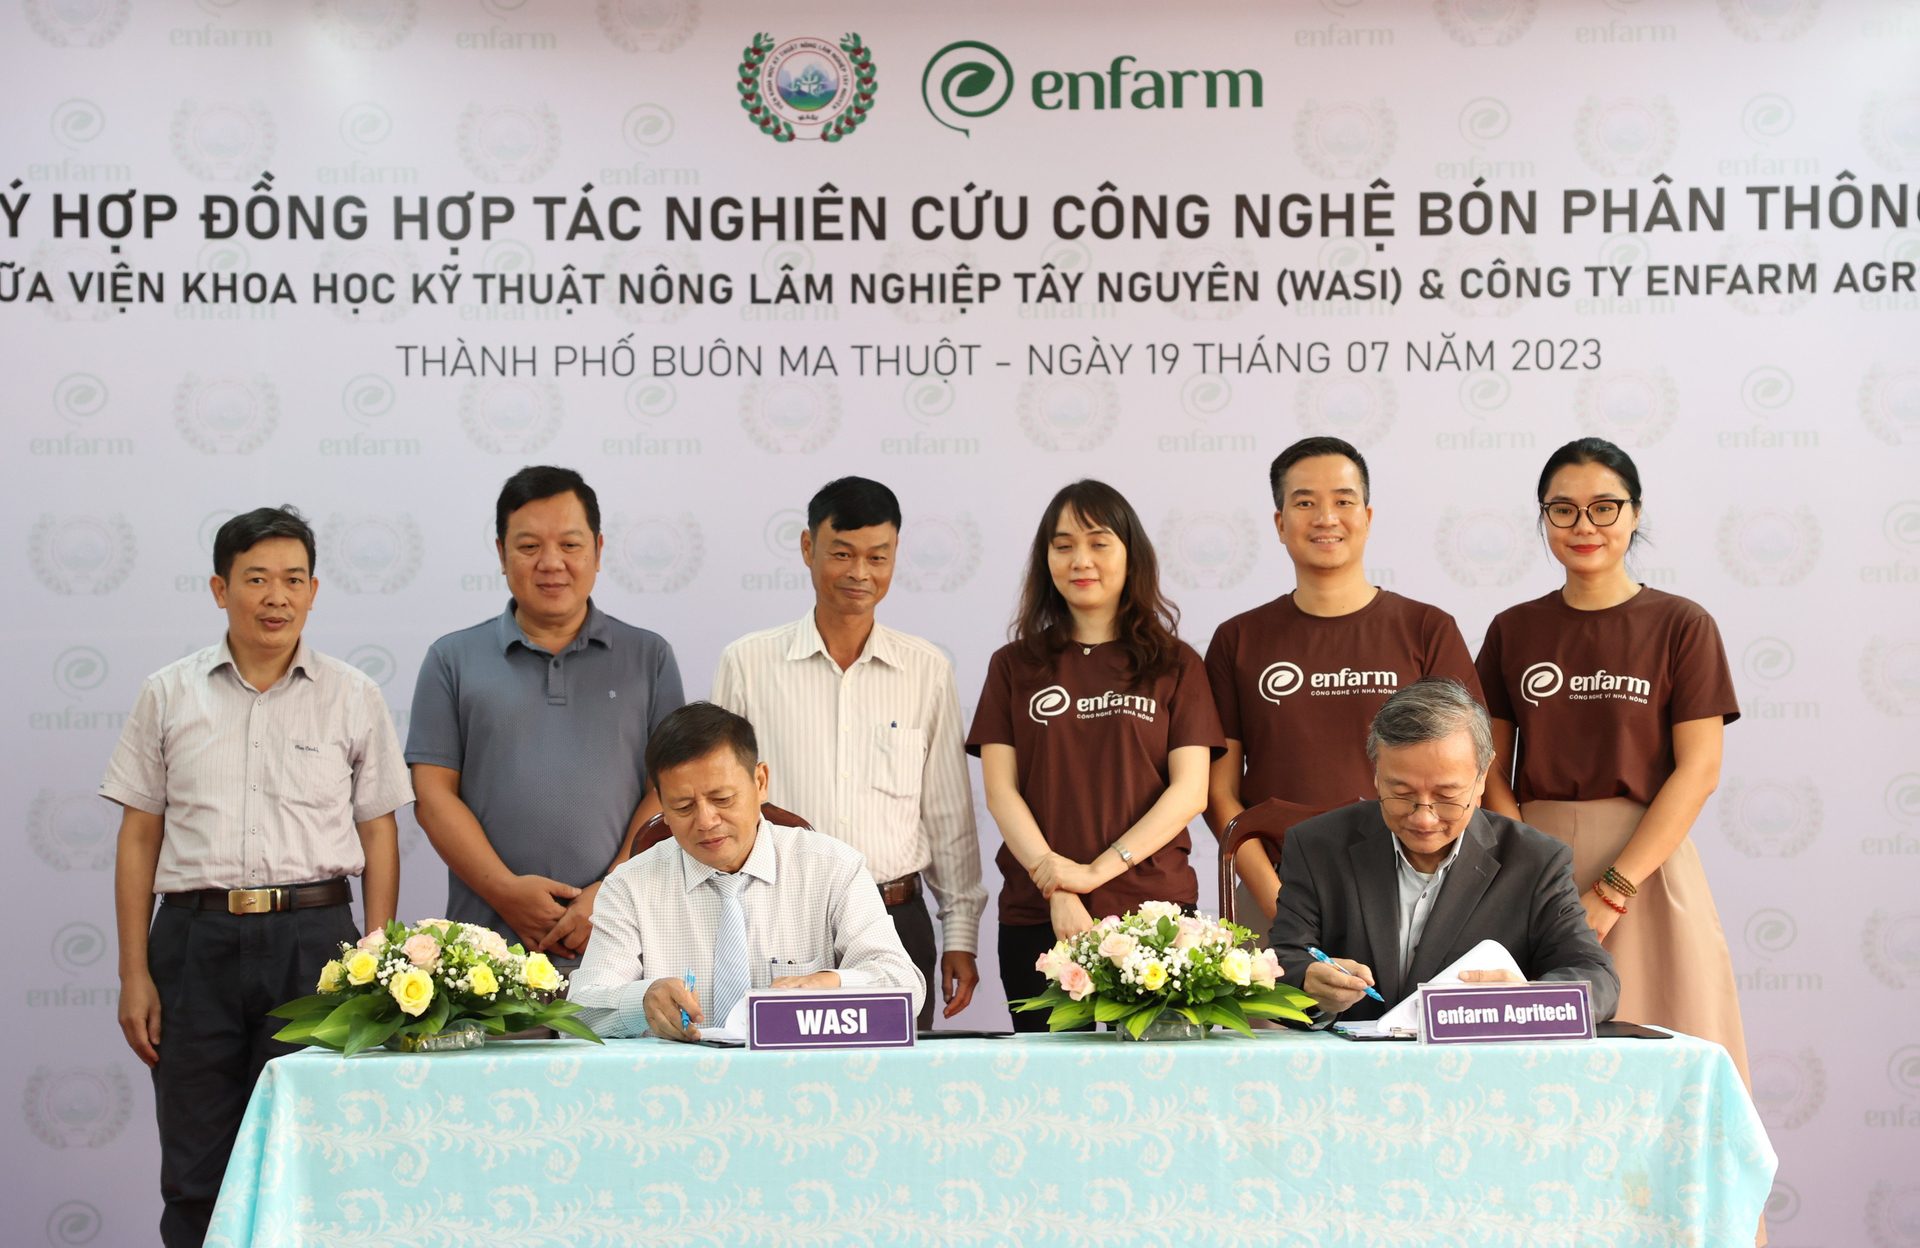 Lãnh đạo Viện Khoa học kỹ thuật Nông lâm nghiệp Tây Nguyên và Công ty Enfarm Agritech ký kết hợp tác nghiên cứu công nghệ bón phân thông minh. Ảnh: Quang Yên.